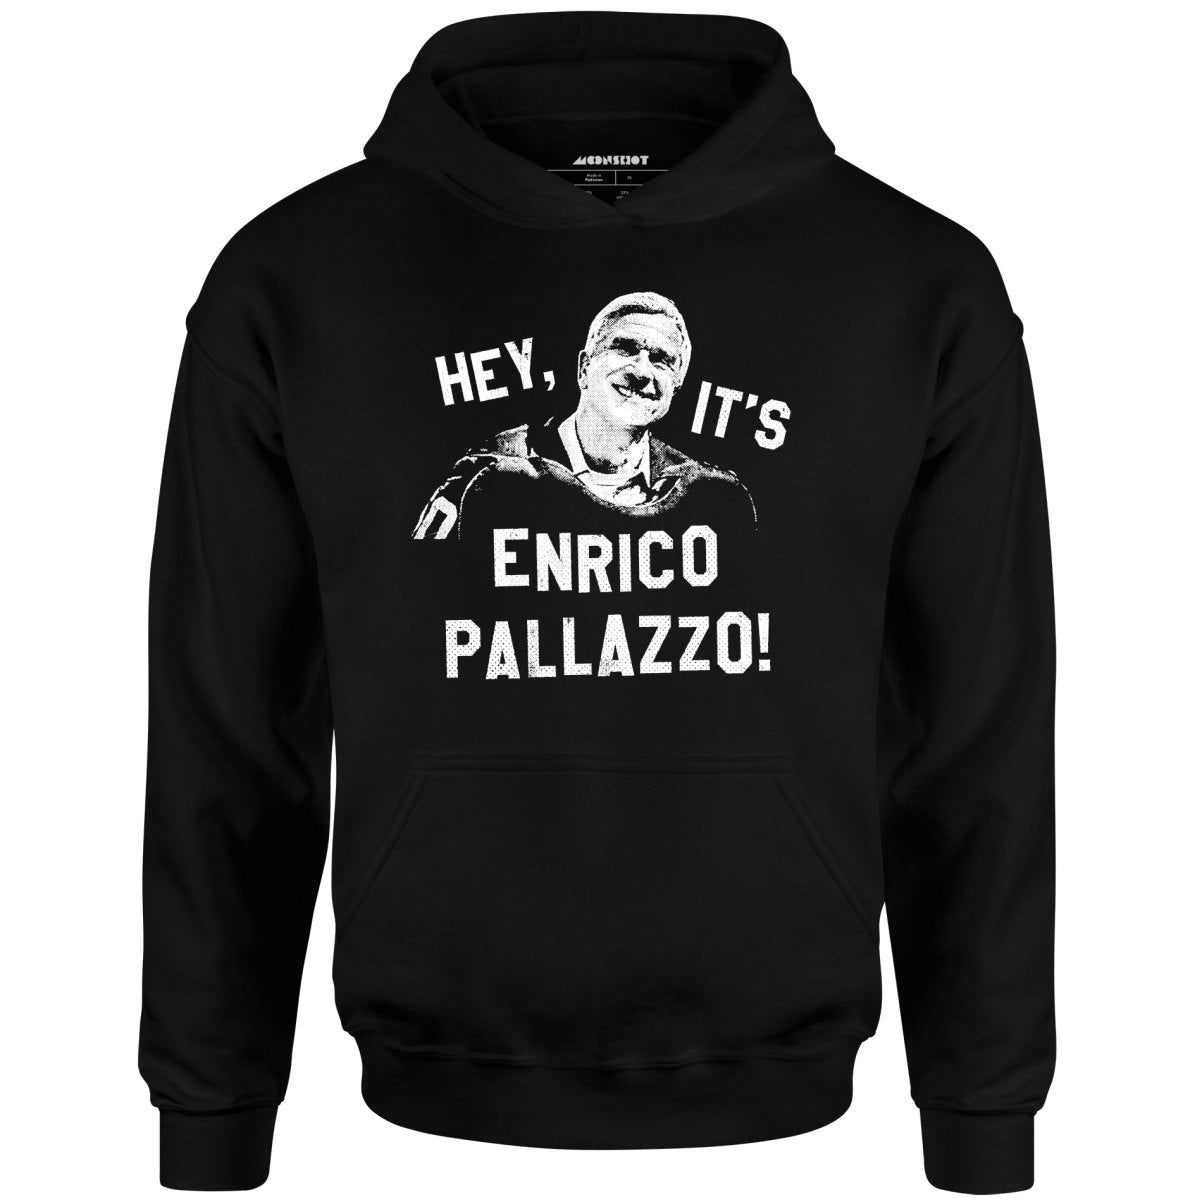 Hey, It's Enrico Pallazzo! - Unisex Hoodie